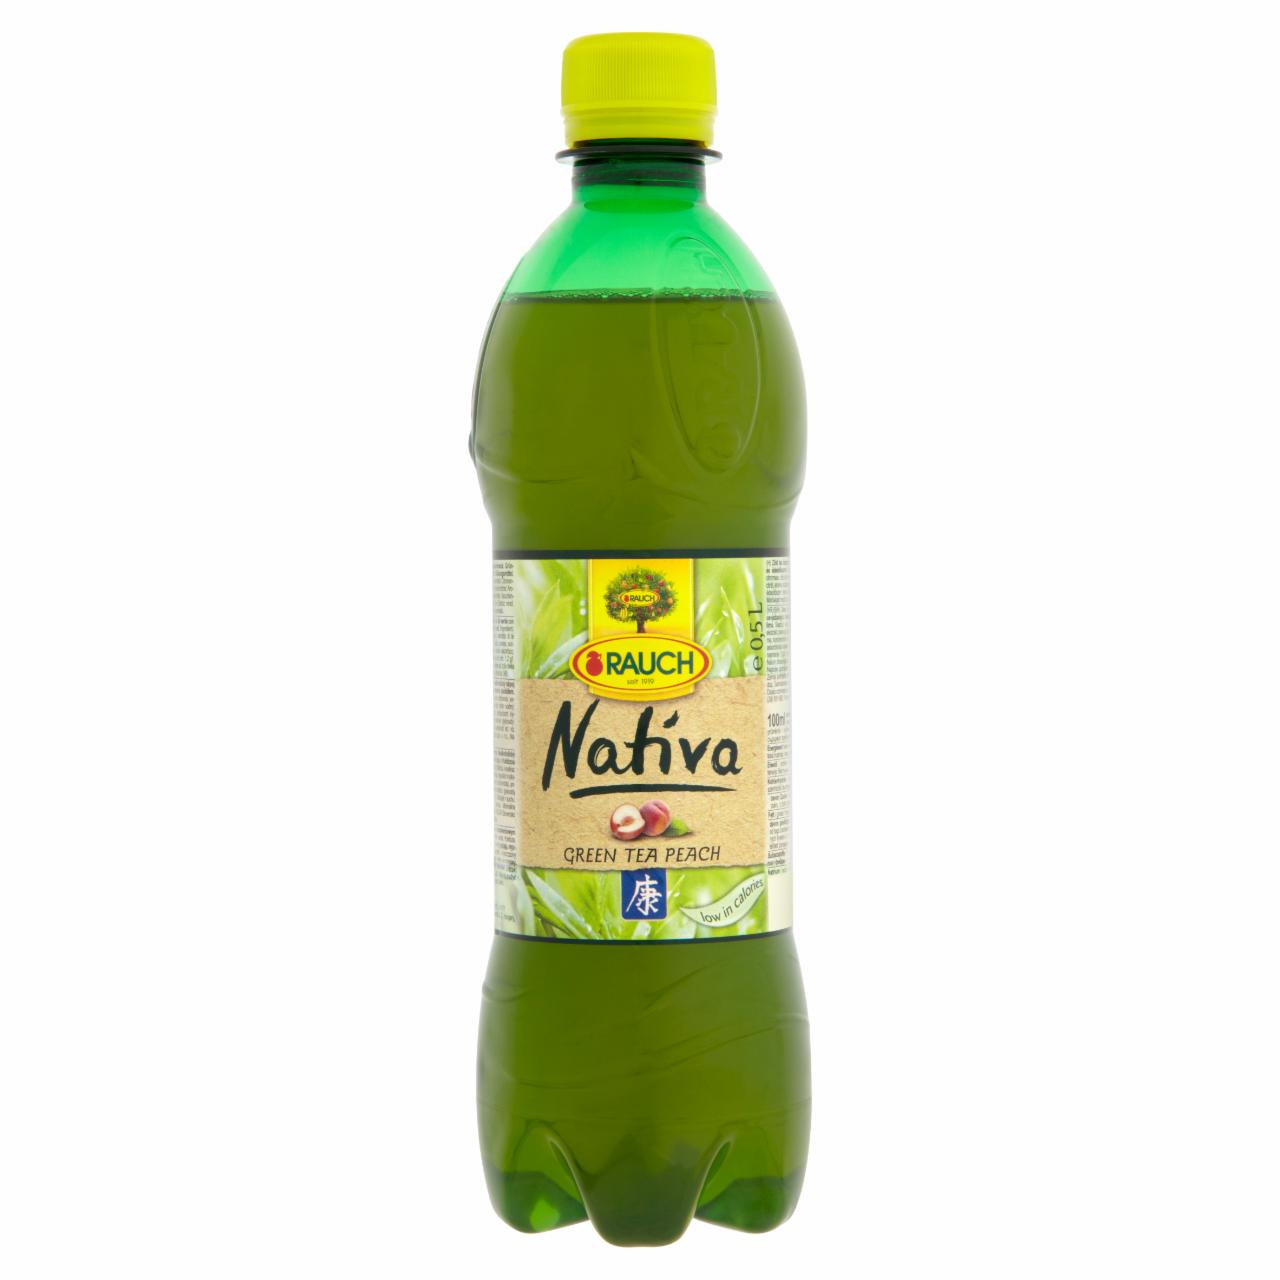 Képek - Rauch Nativa zöld tea őszibarack ízesítéssel 0,5 l